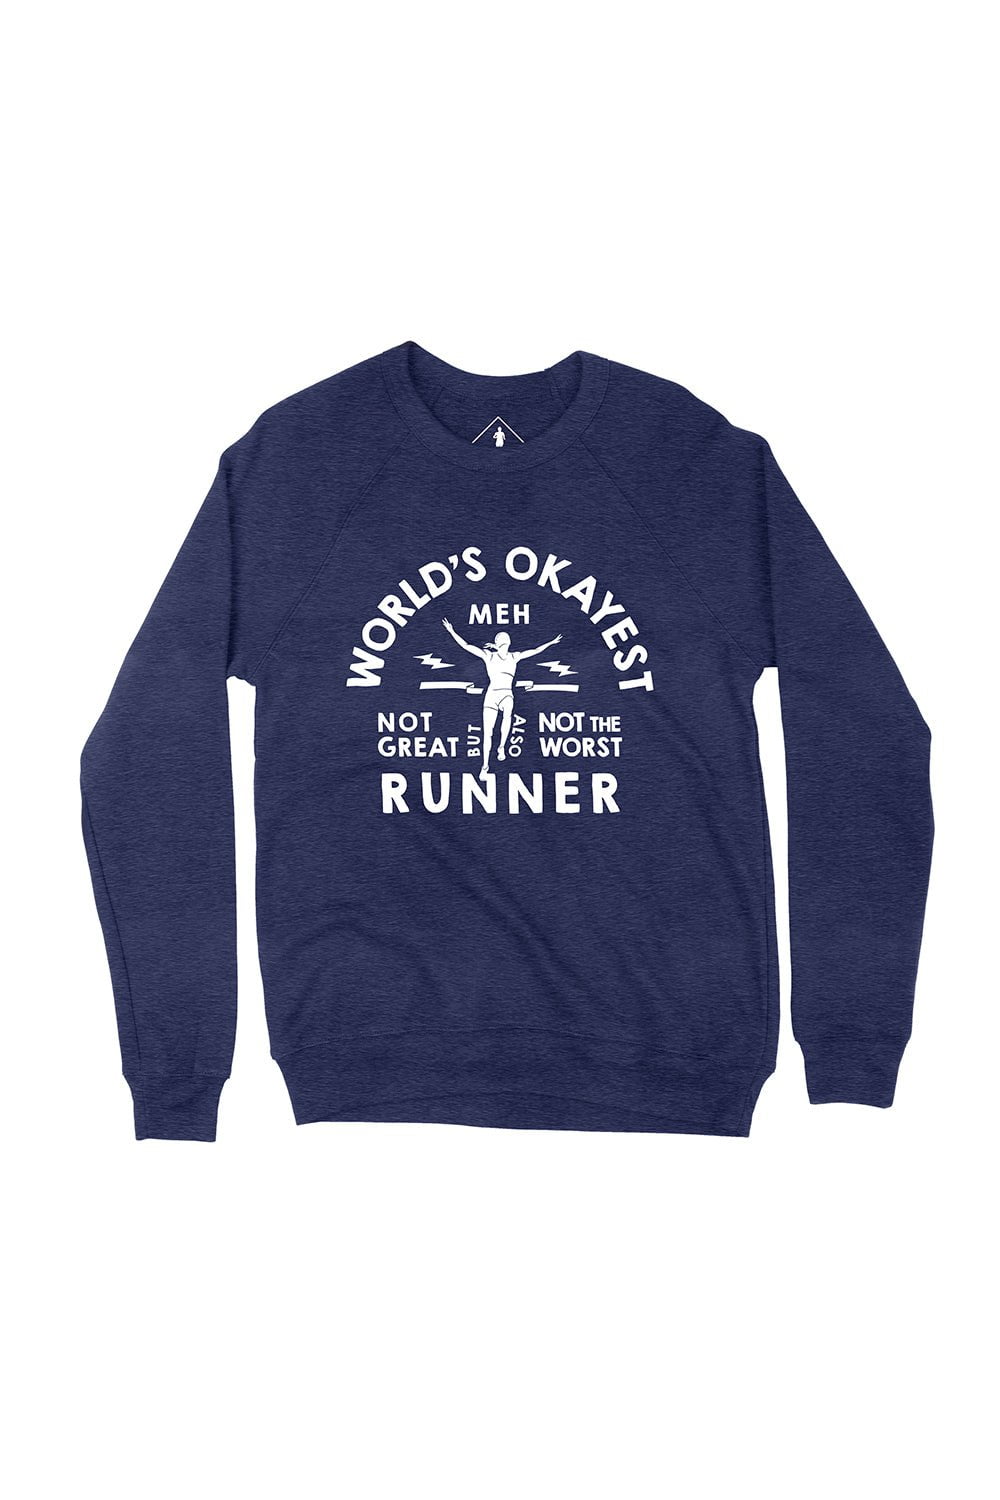 World's Okayest Runner Sweatshirt – Sarah Marie Running Co.